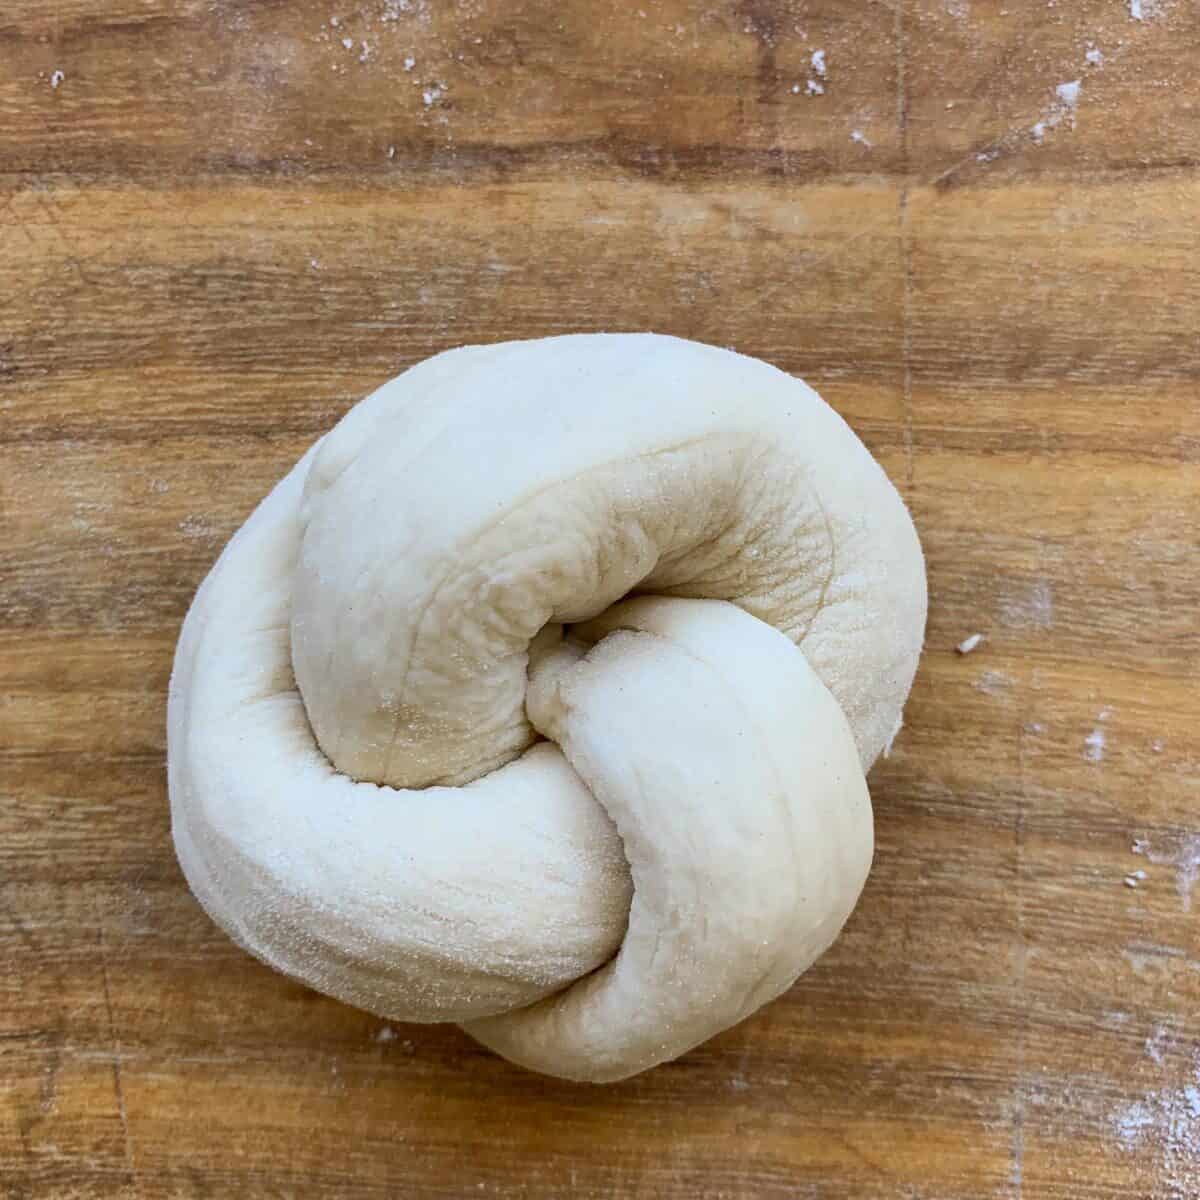 final shape of the rolls